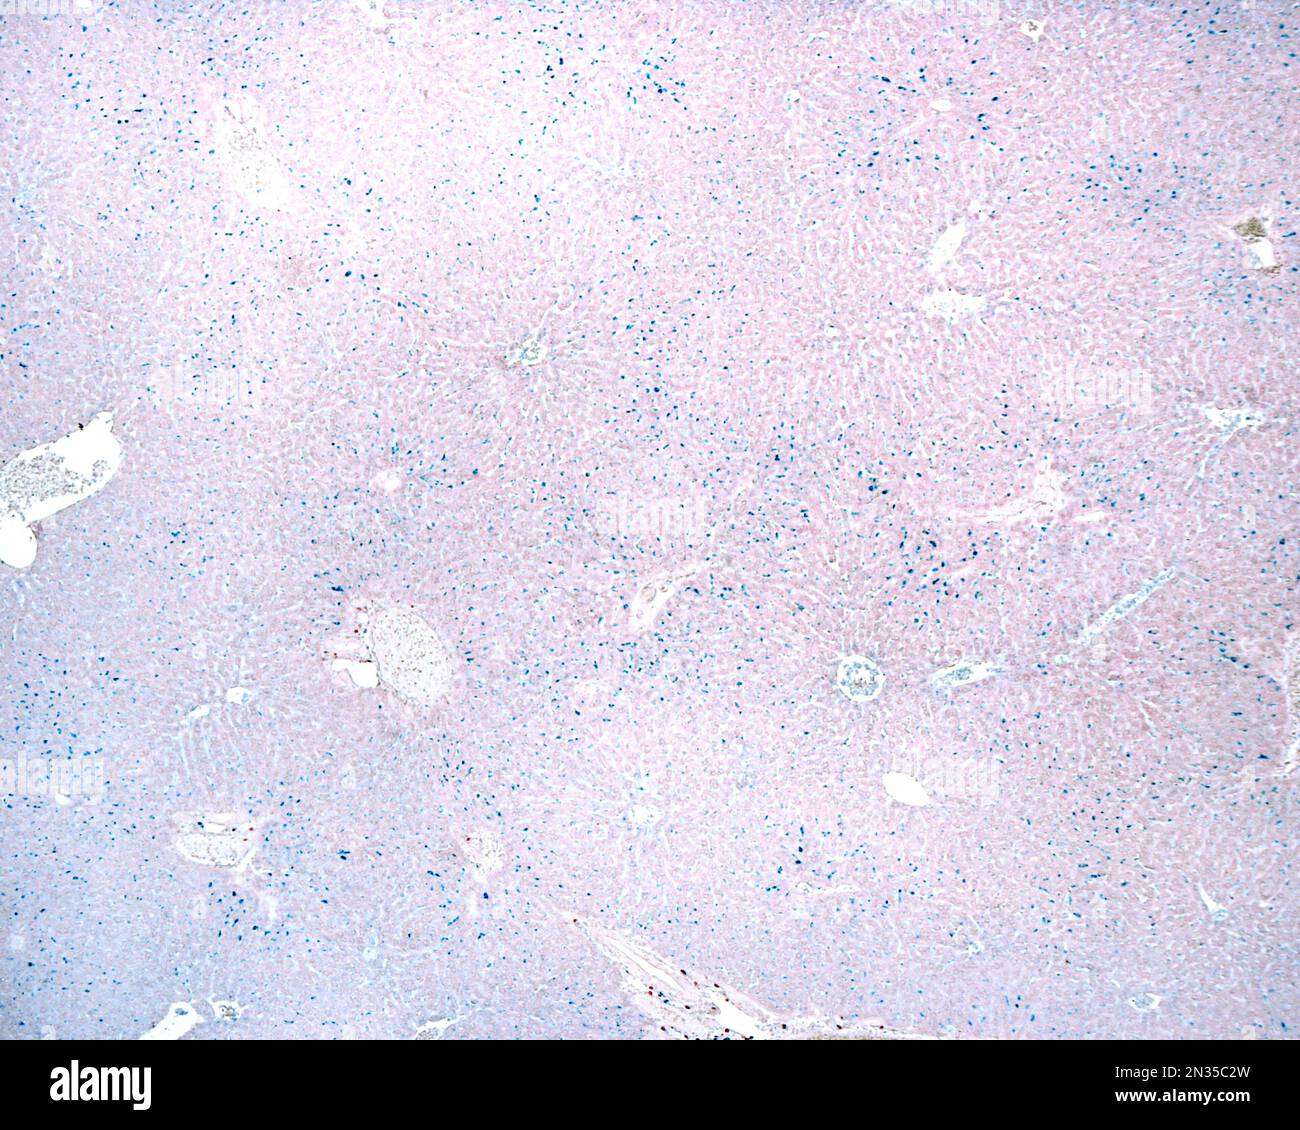 Micrografia a basso ingrandimento di un fegato che mostra cellule Kupffer marcate in blu con la colorazione vitale Trypan blu, una colorazione vitale che agisce come un macrofo Foto Stock